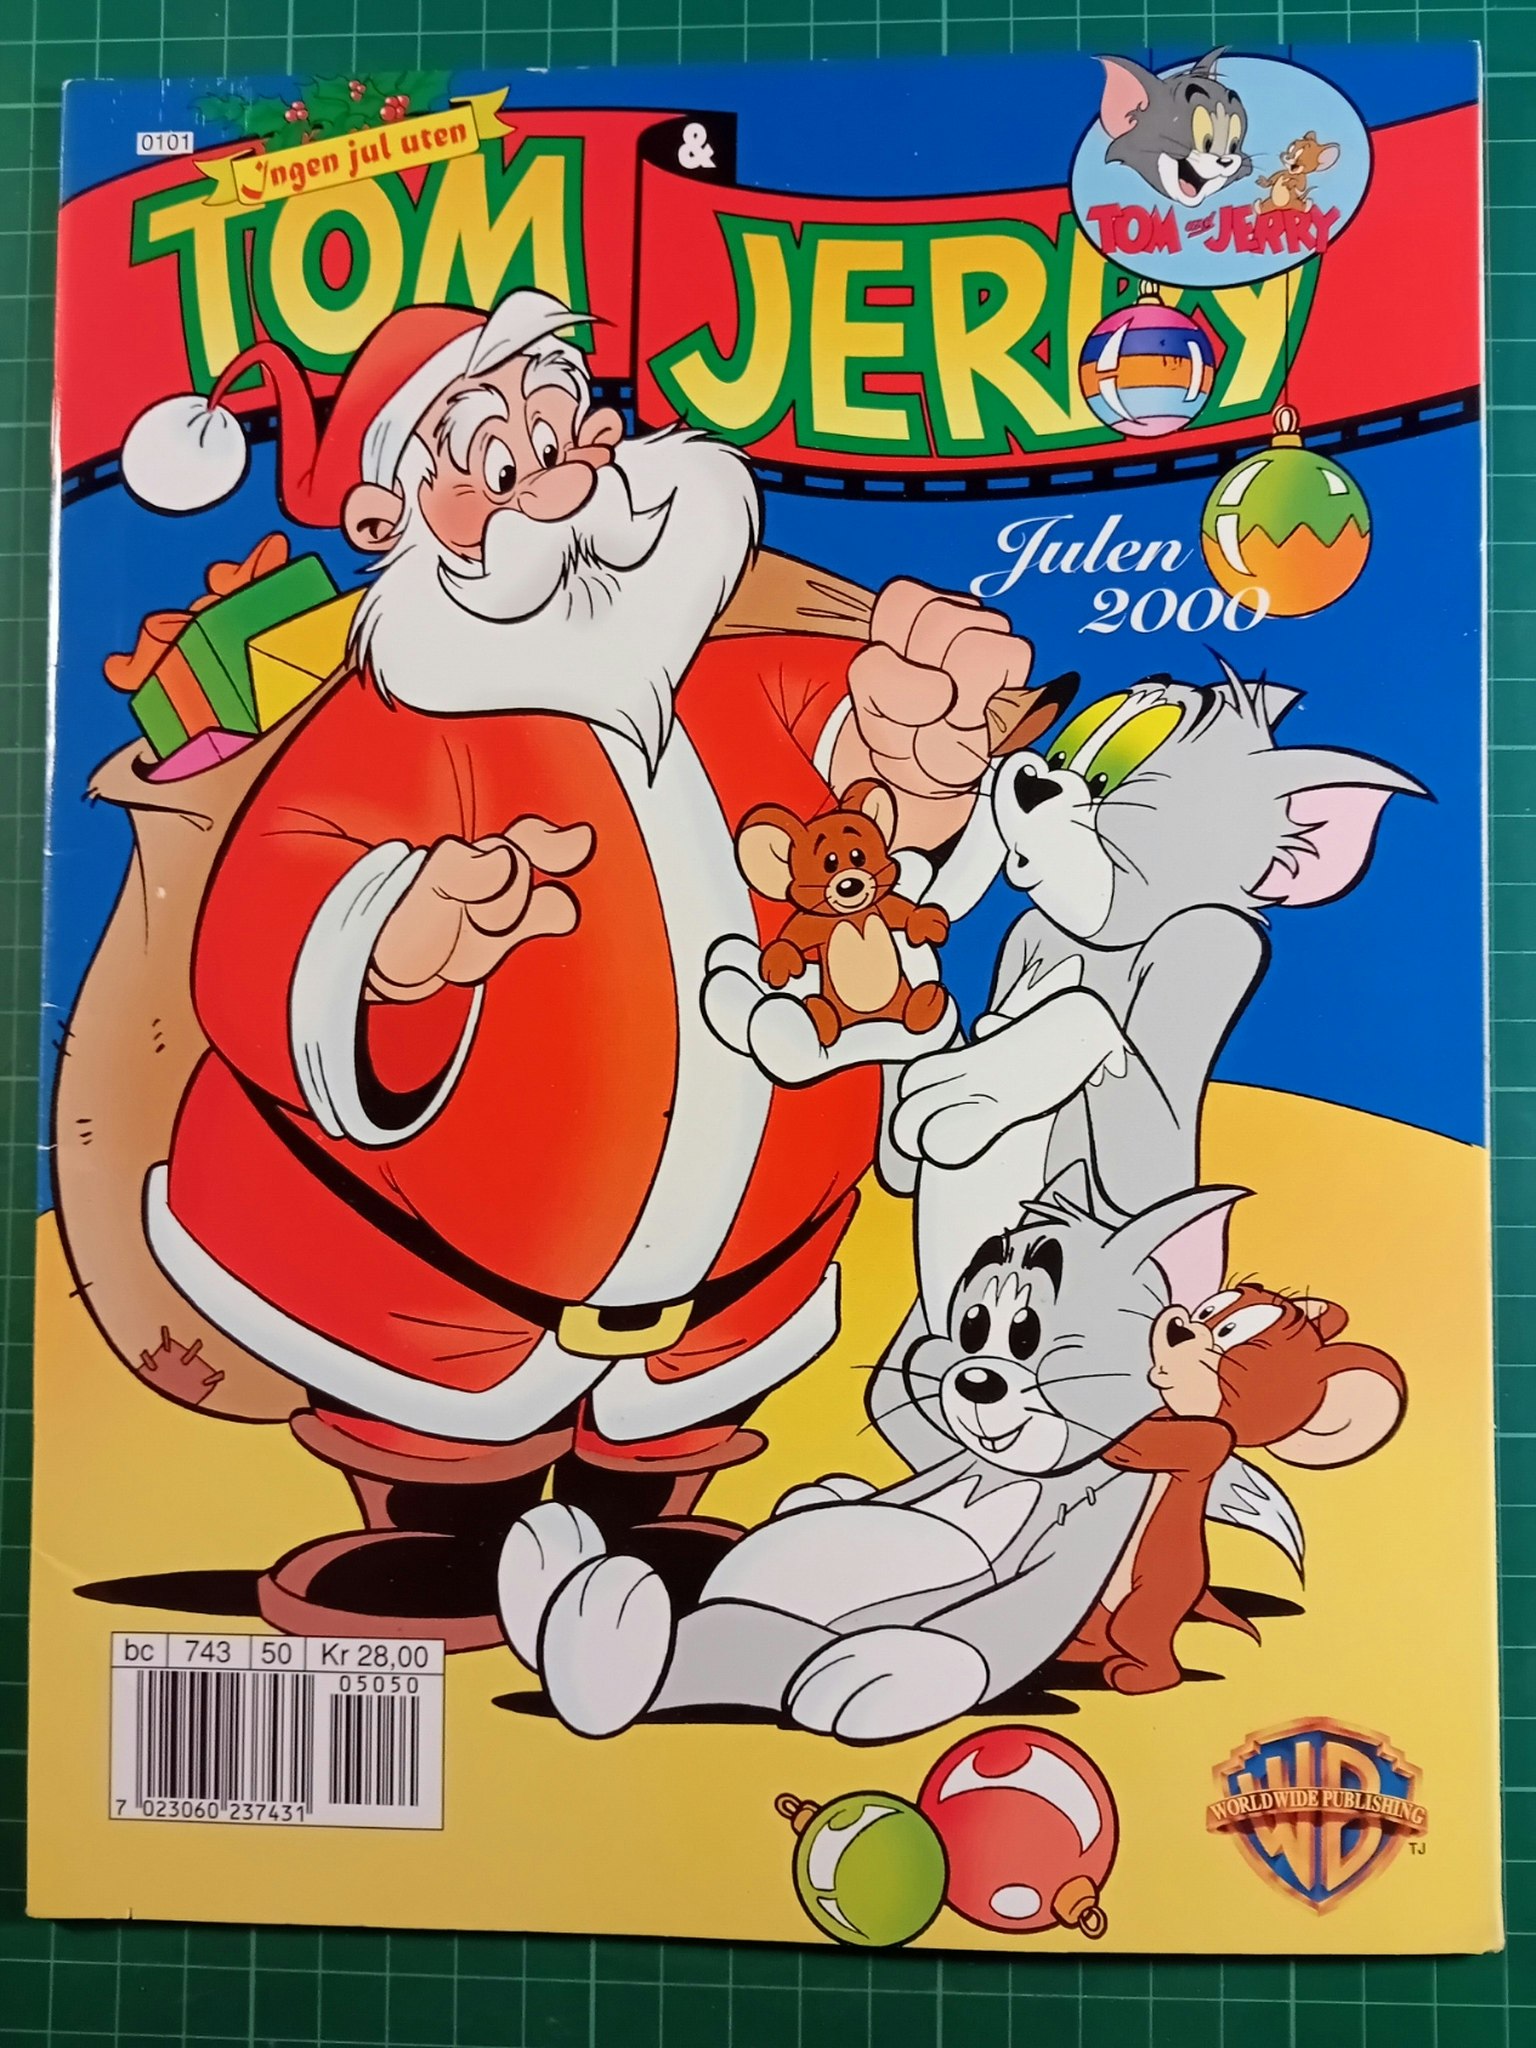 Tom & Jerry julen 2000